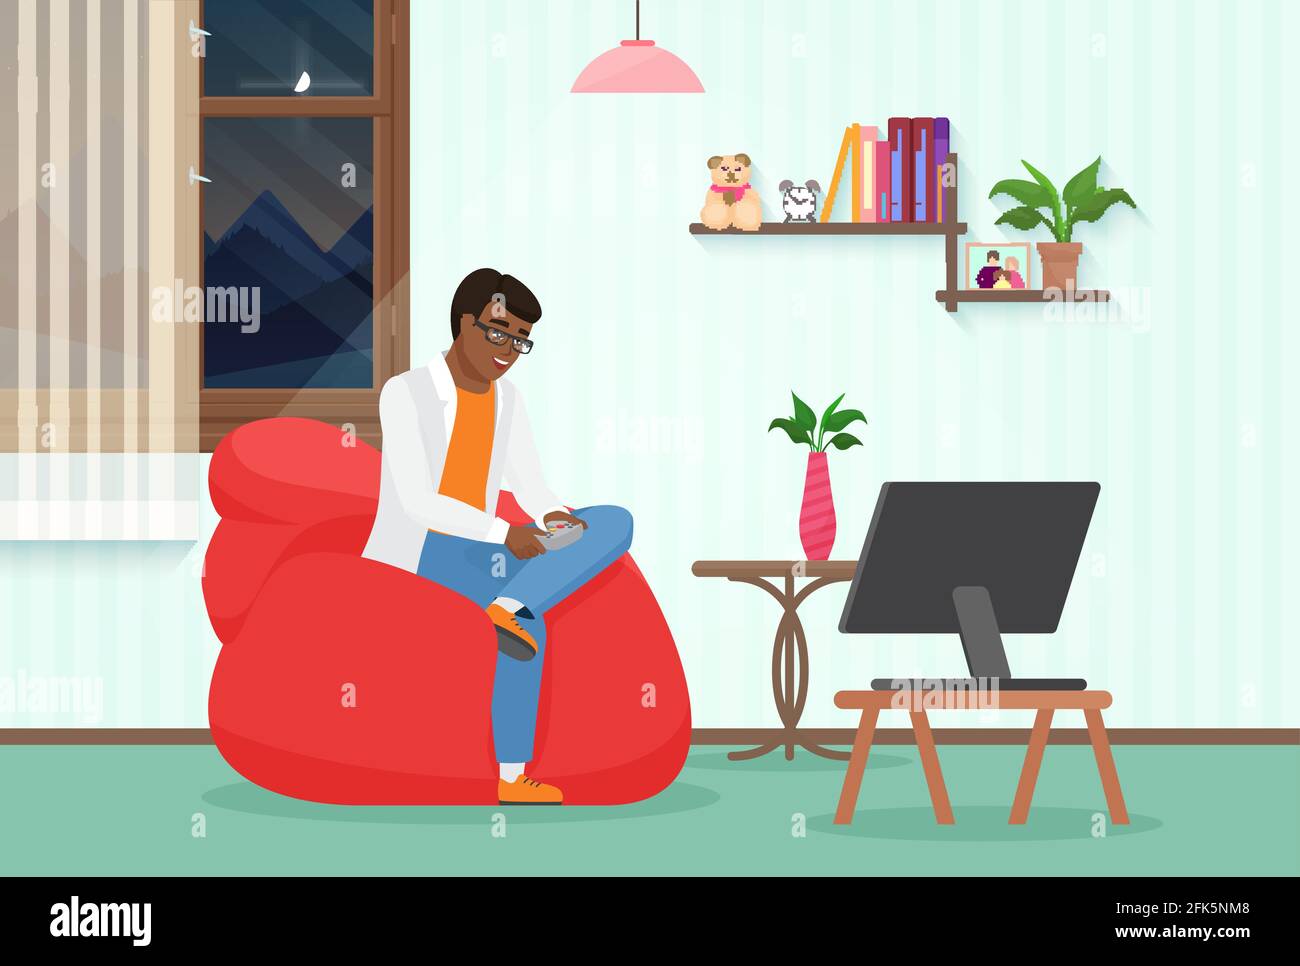 Les gens jouent au jeu vidéo à la maison, gars avec manette de manette de jeu assis dans un fauteuil, jouant Illustration de Vecteur